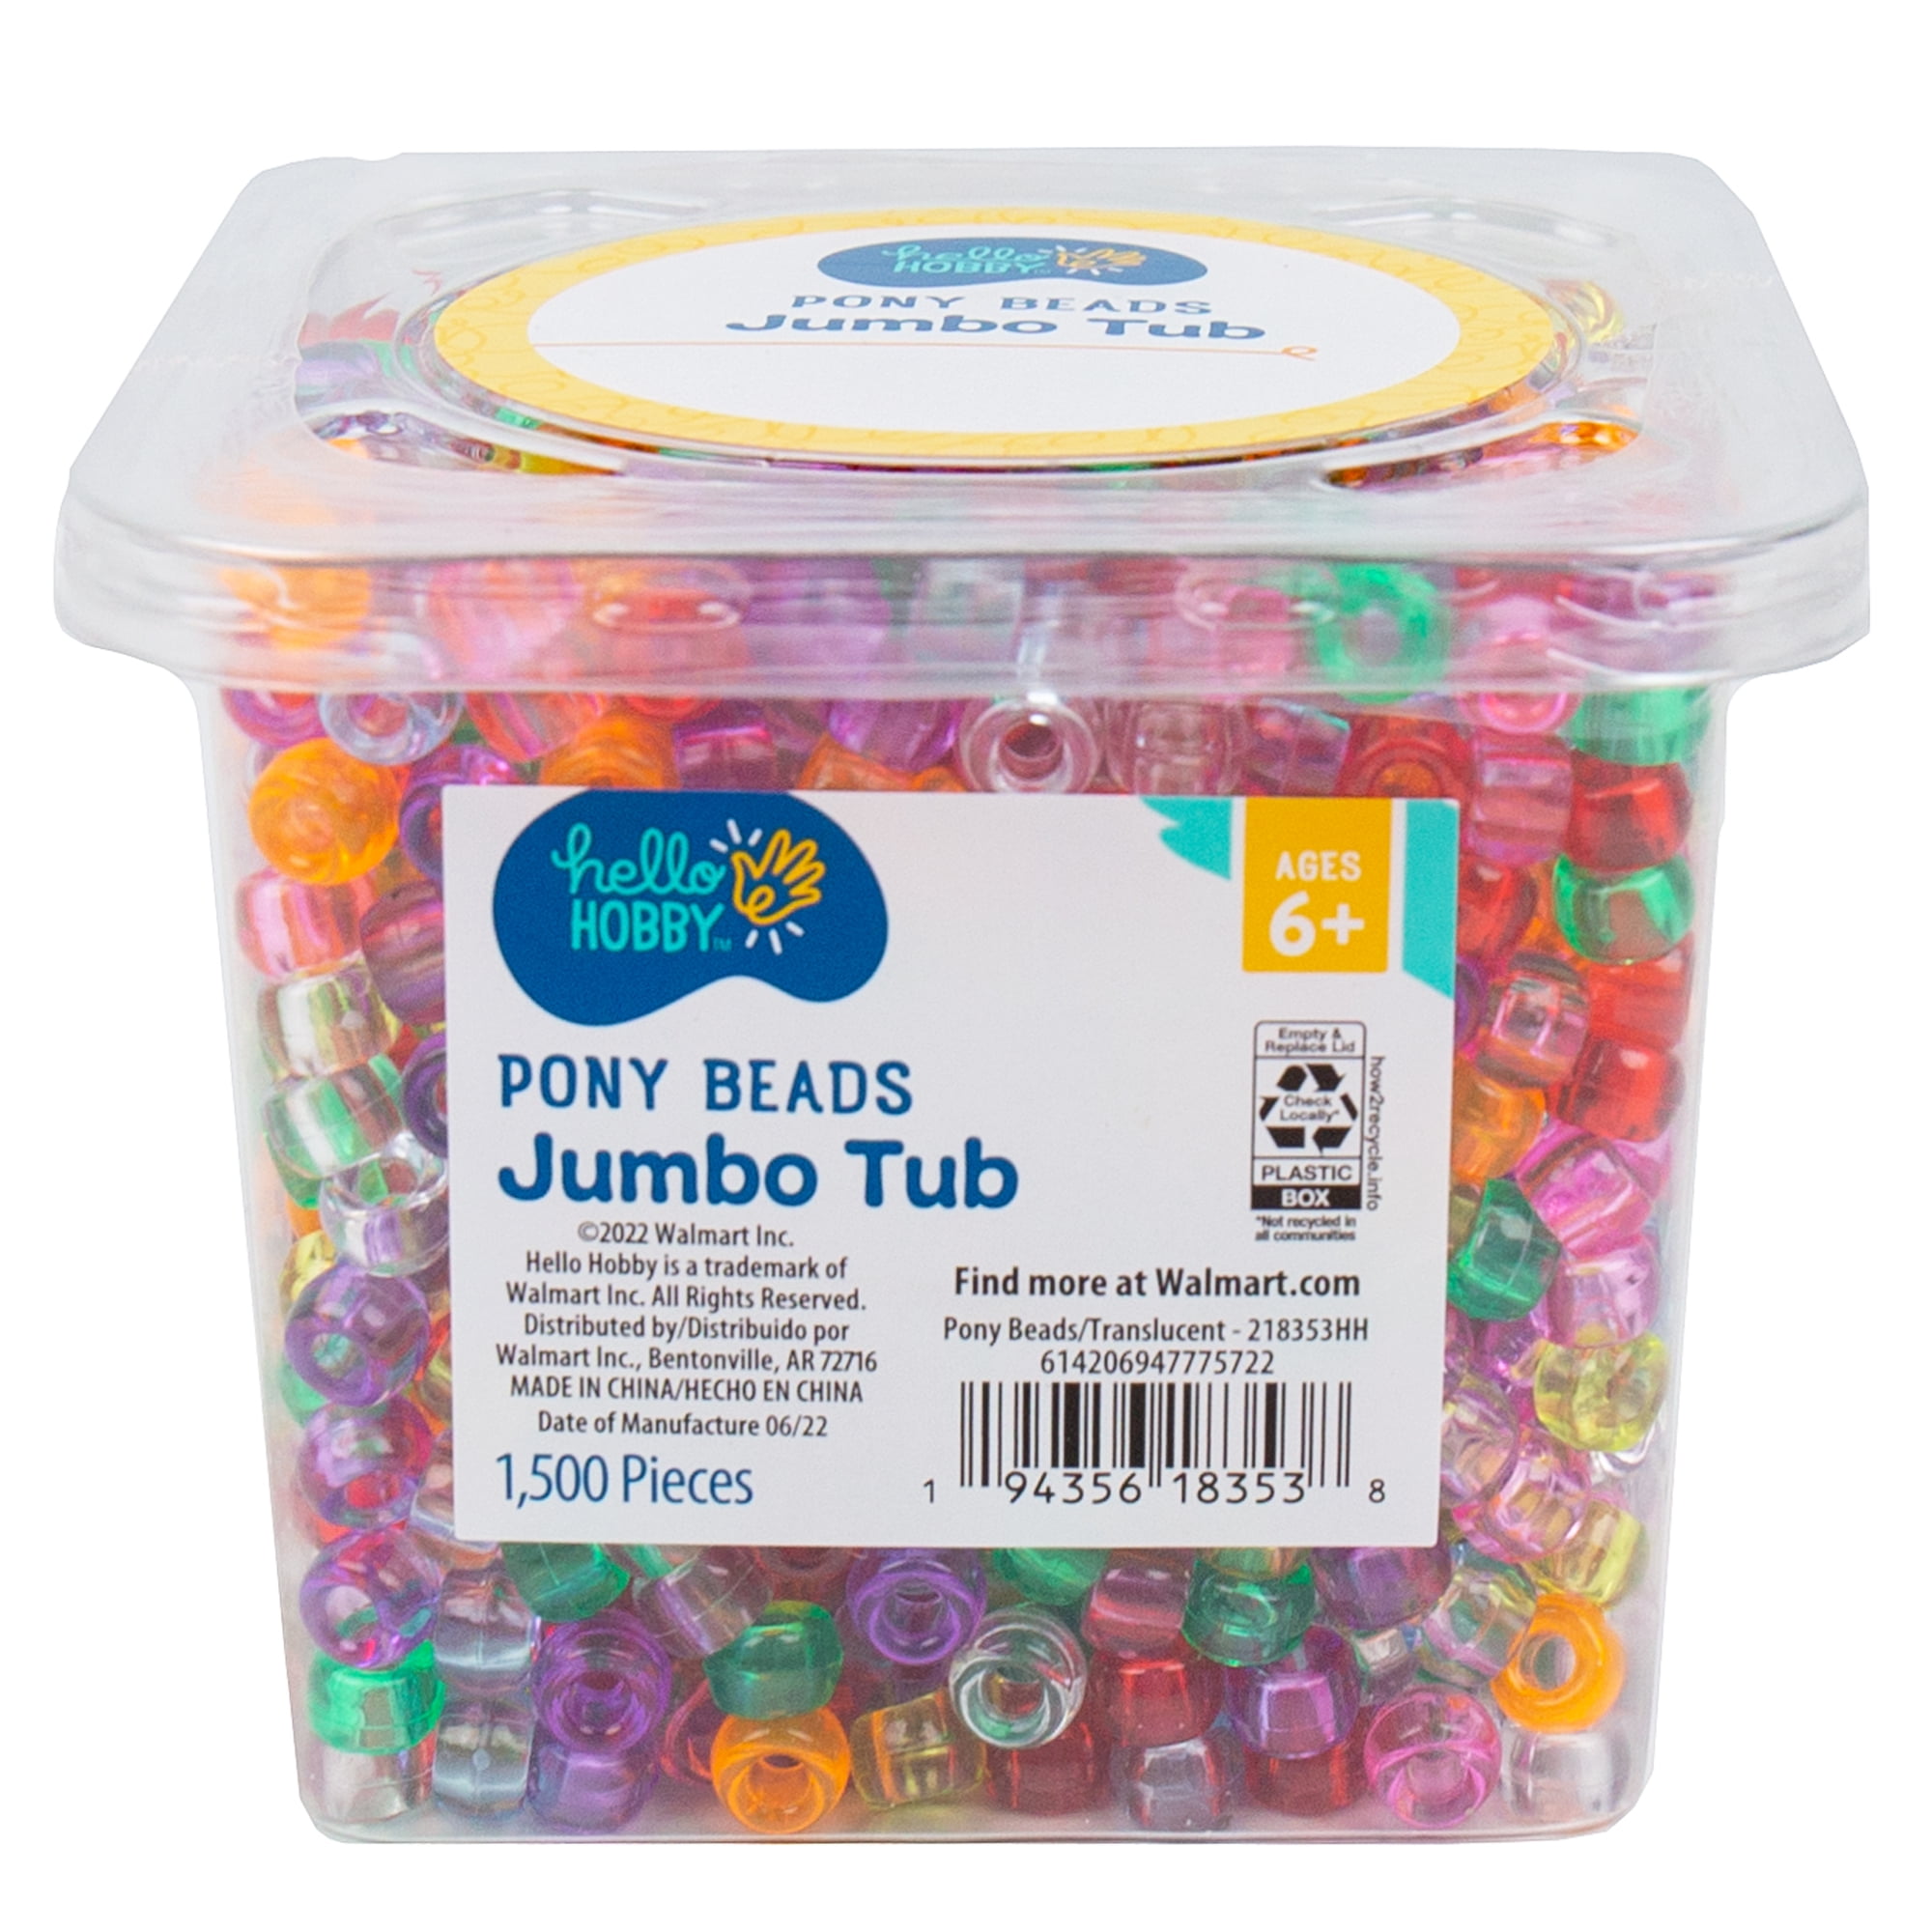 Hello Hobby Pony Beads Jumbo Tub